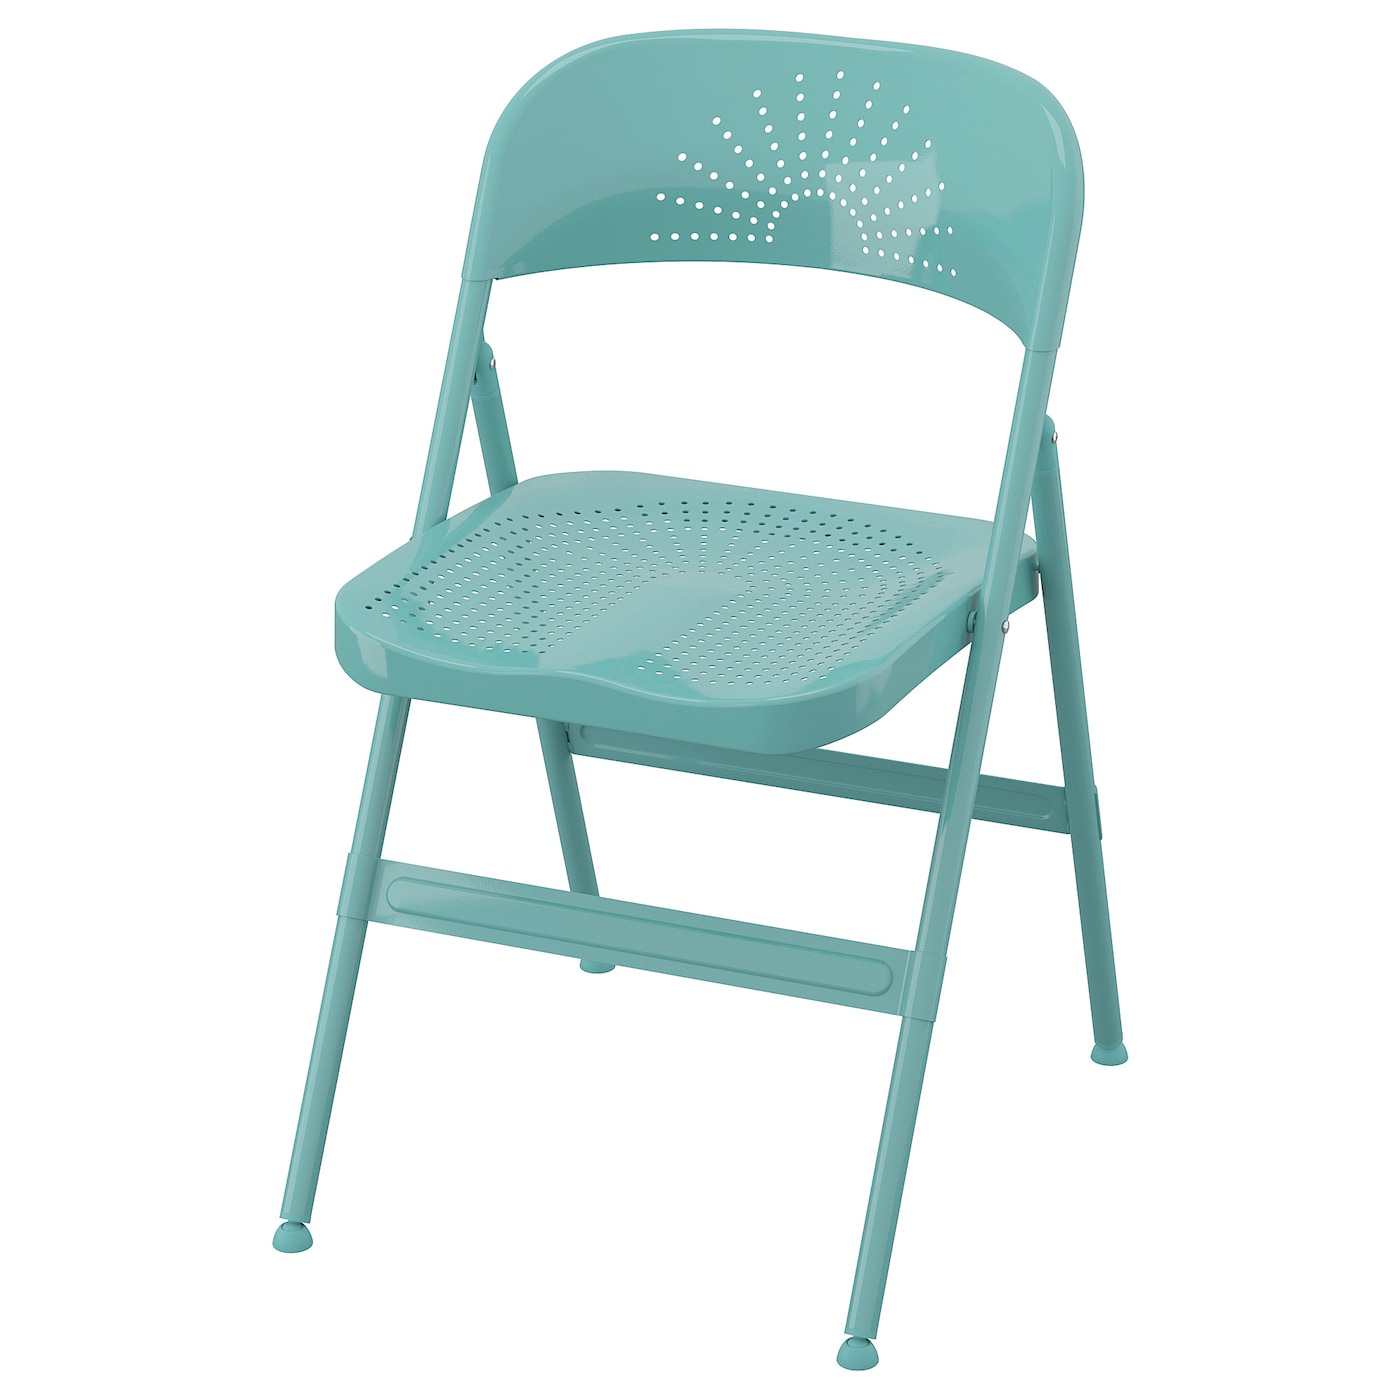 FRODE Klappstuhl  - Esszimmerstühle - Möbel Ideen für dein Zuhause von Home Trends. Möbel Trends von Social Media Influencer für dein Skandi Zuhause.